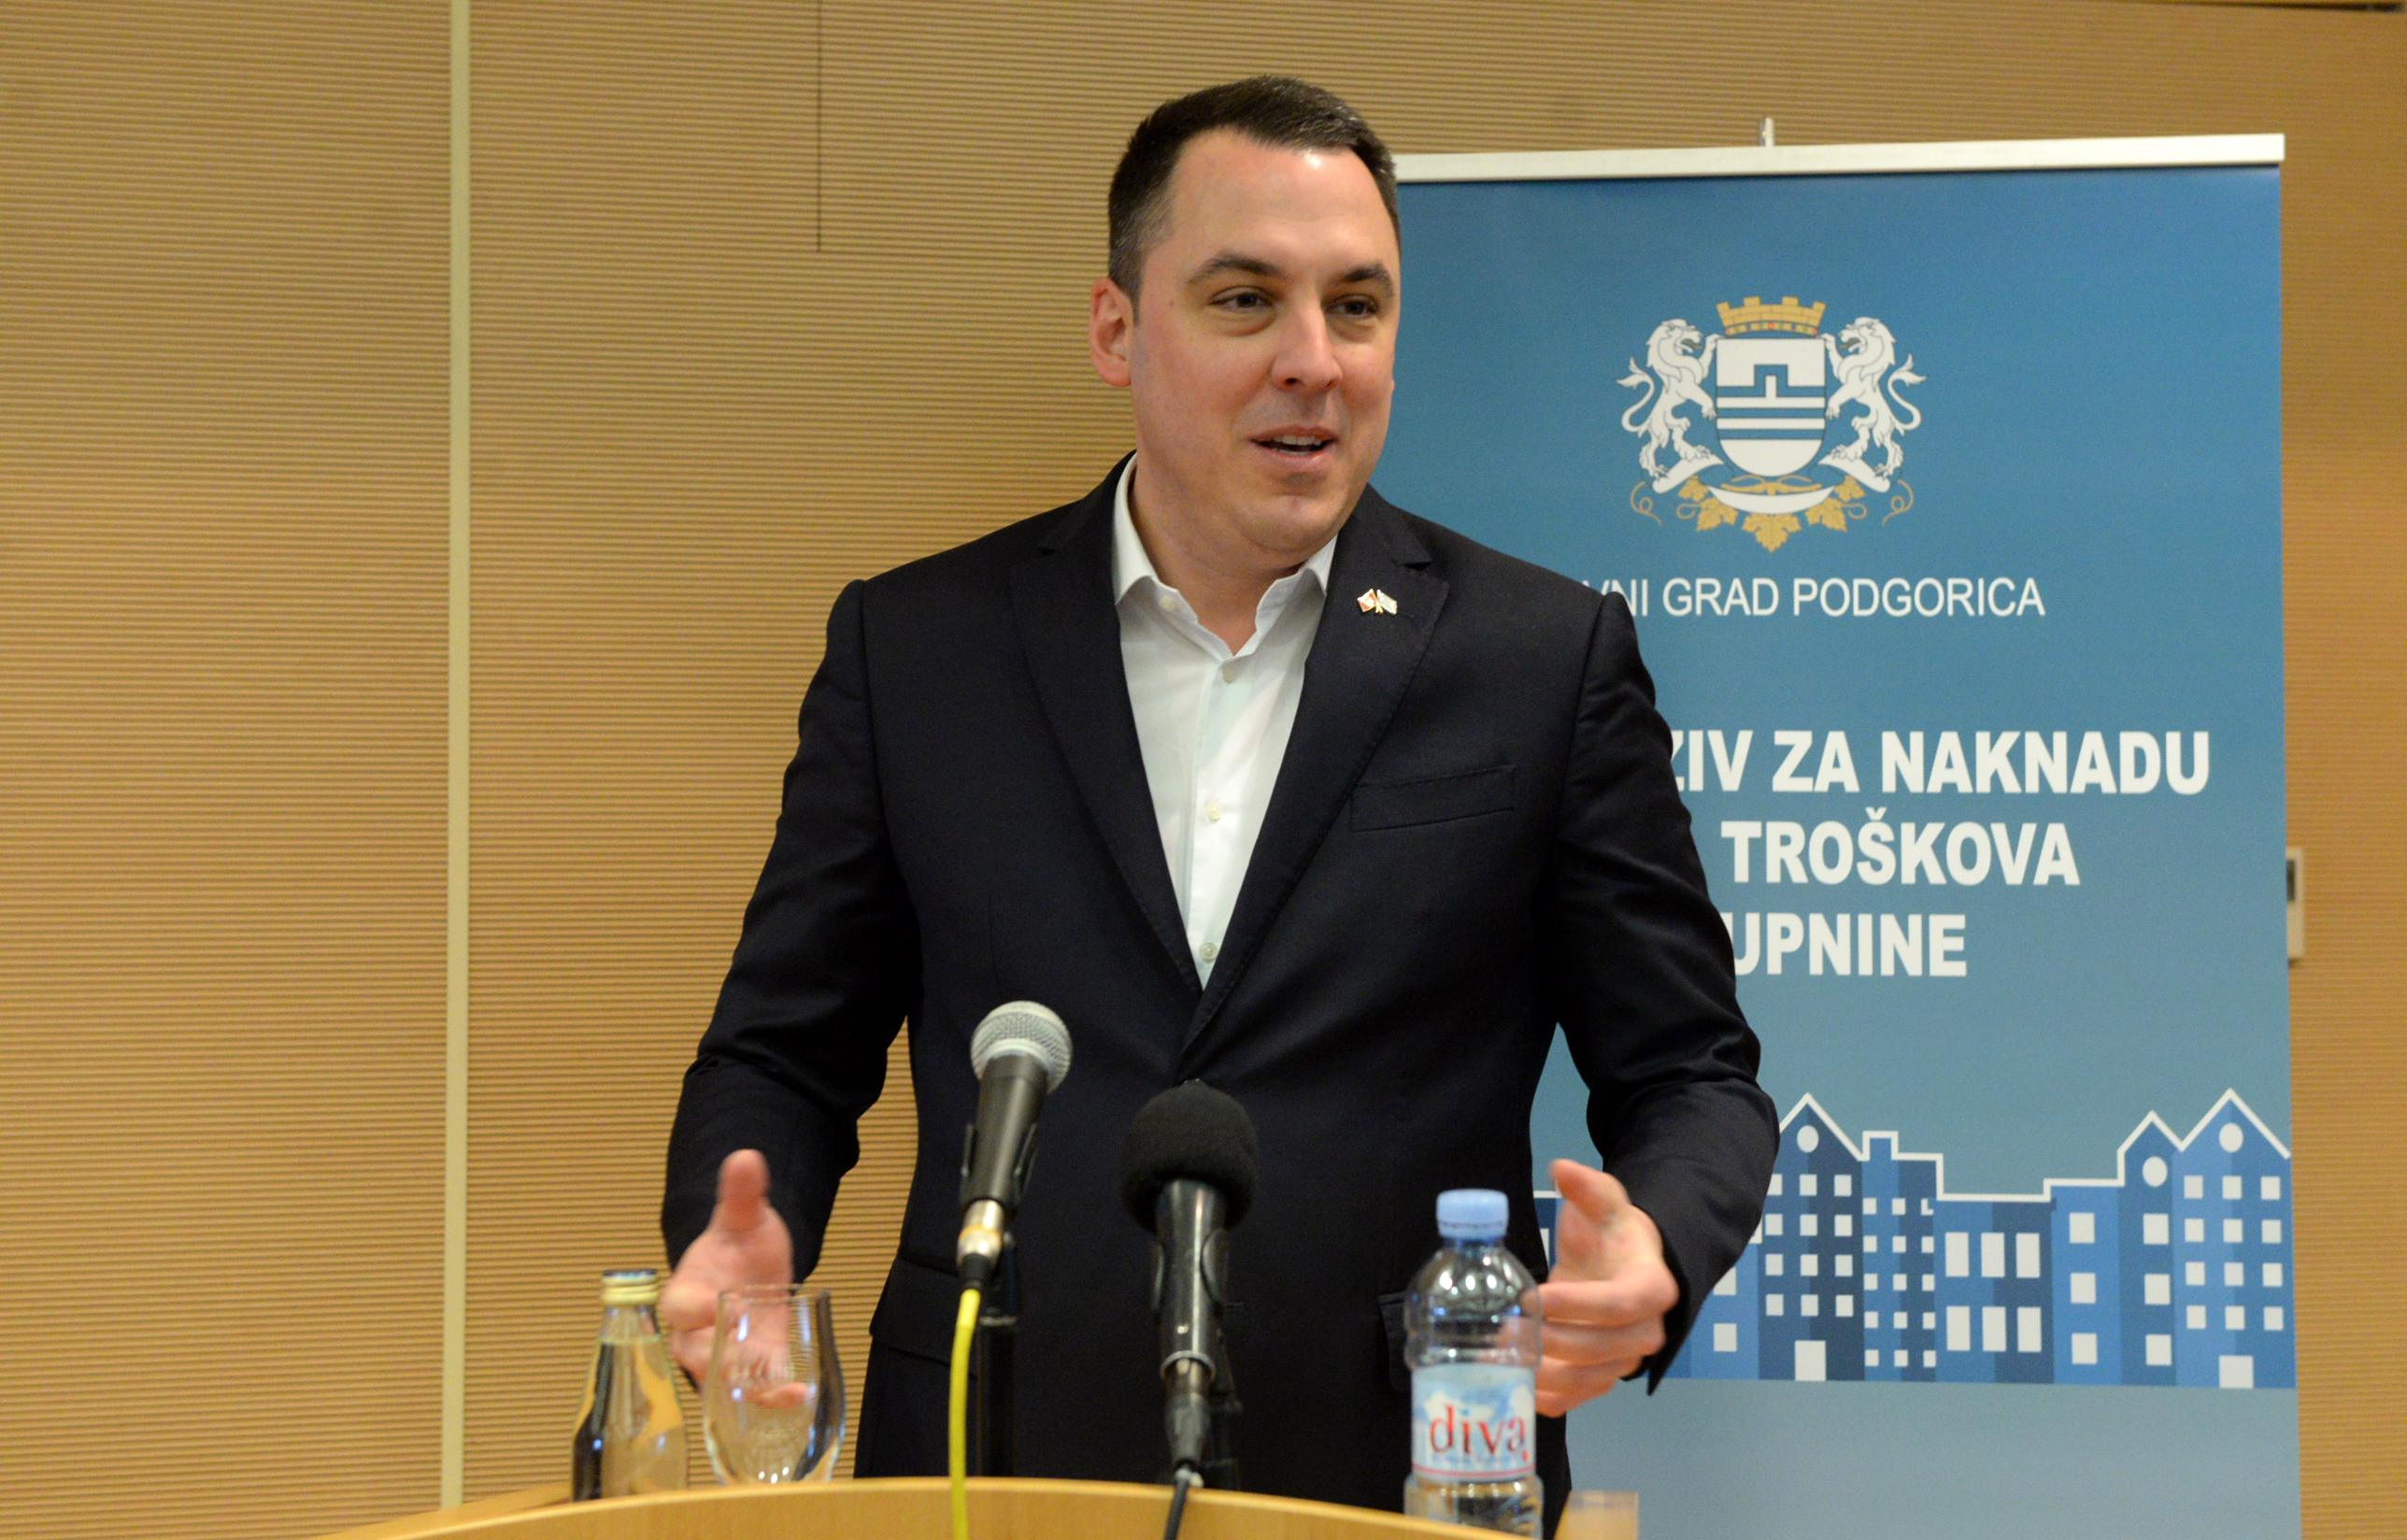 Podgorica i ove godine jedina lokalna uprava koja podržava podstanare; Vuković: Nadam se da će ovaj program nastaviti da živi i da će dobiti podršku i sa državnog nivoa